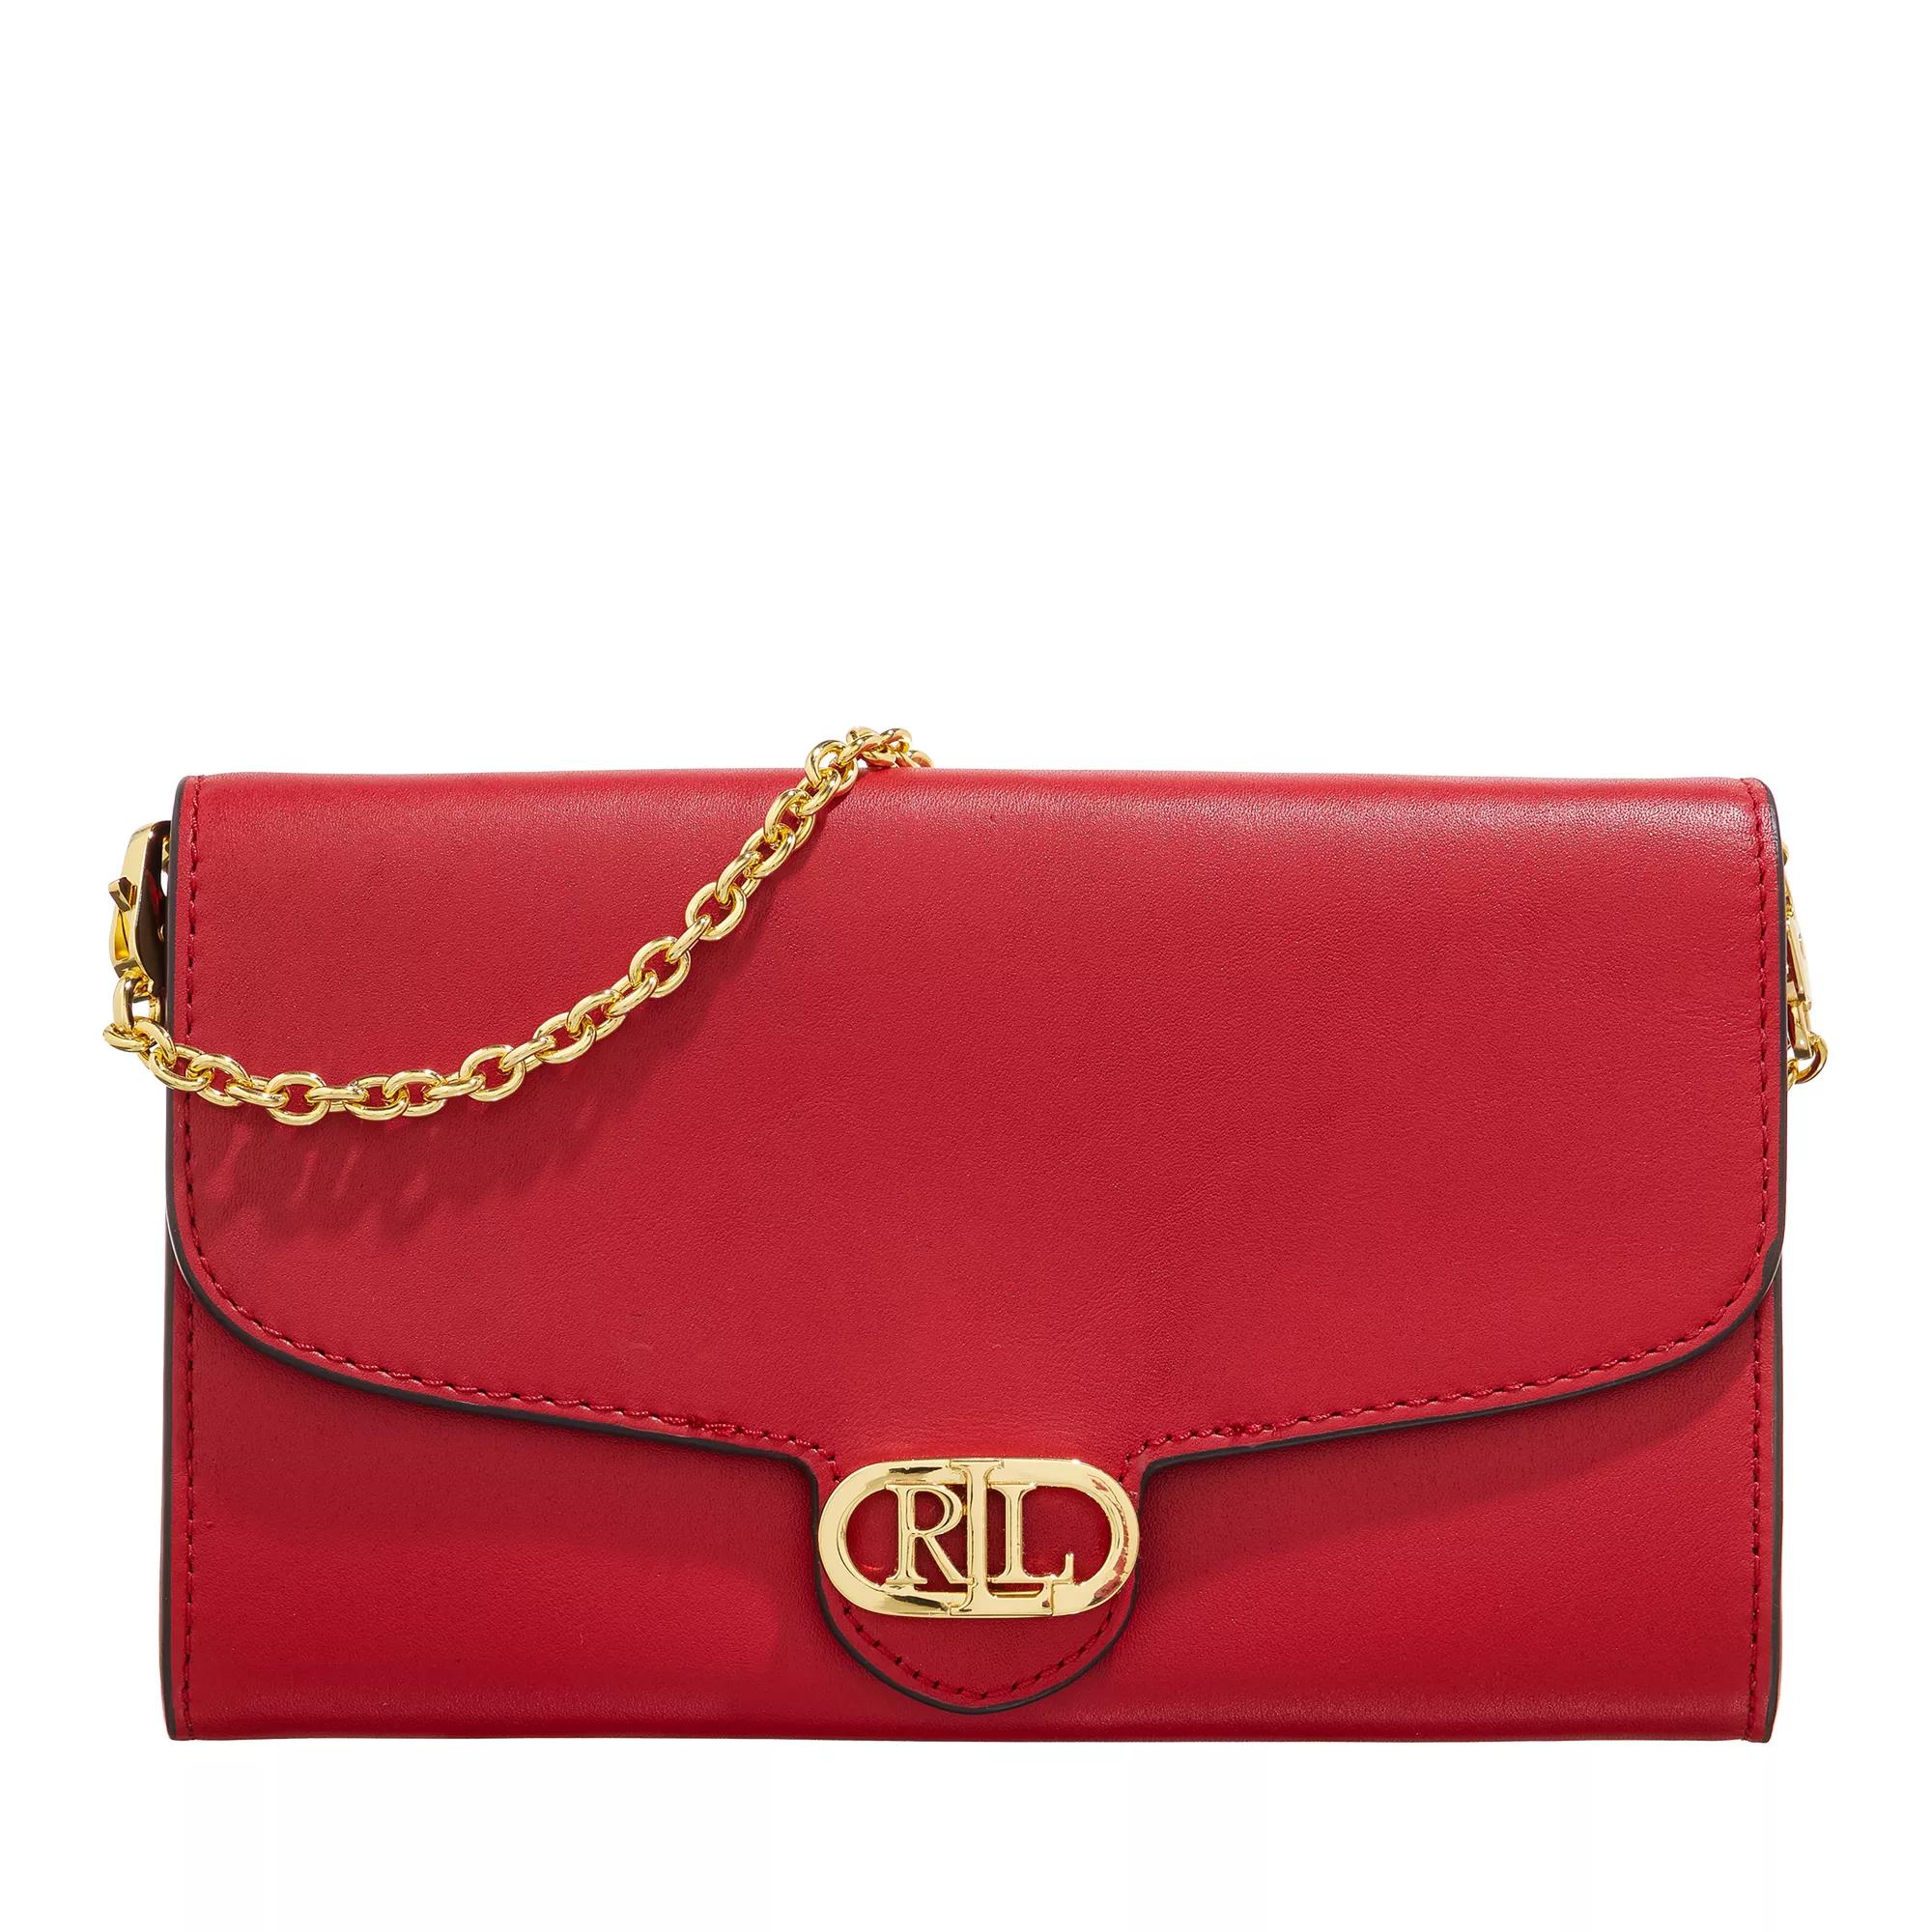 Lauren Ralph Lauren Crossbody bags - Adair 20 Crossbody Medium in rood product